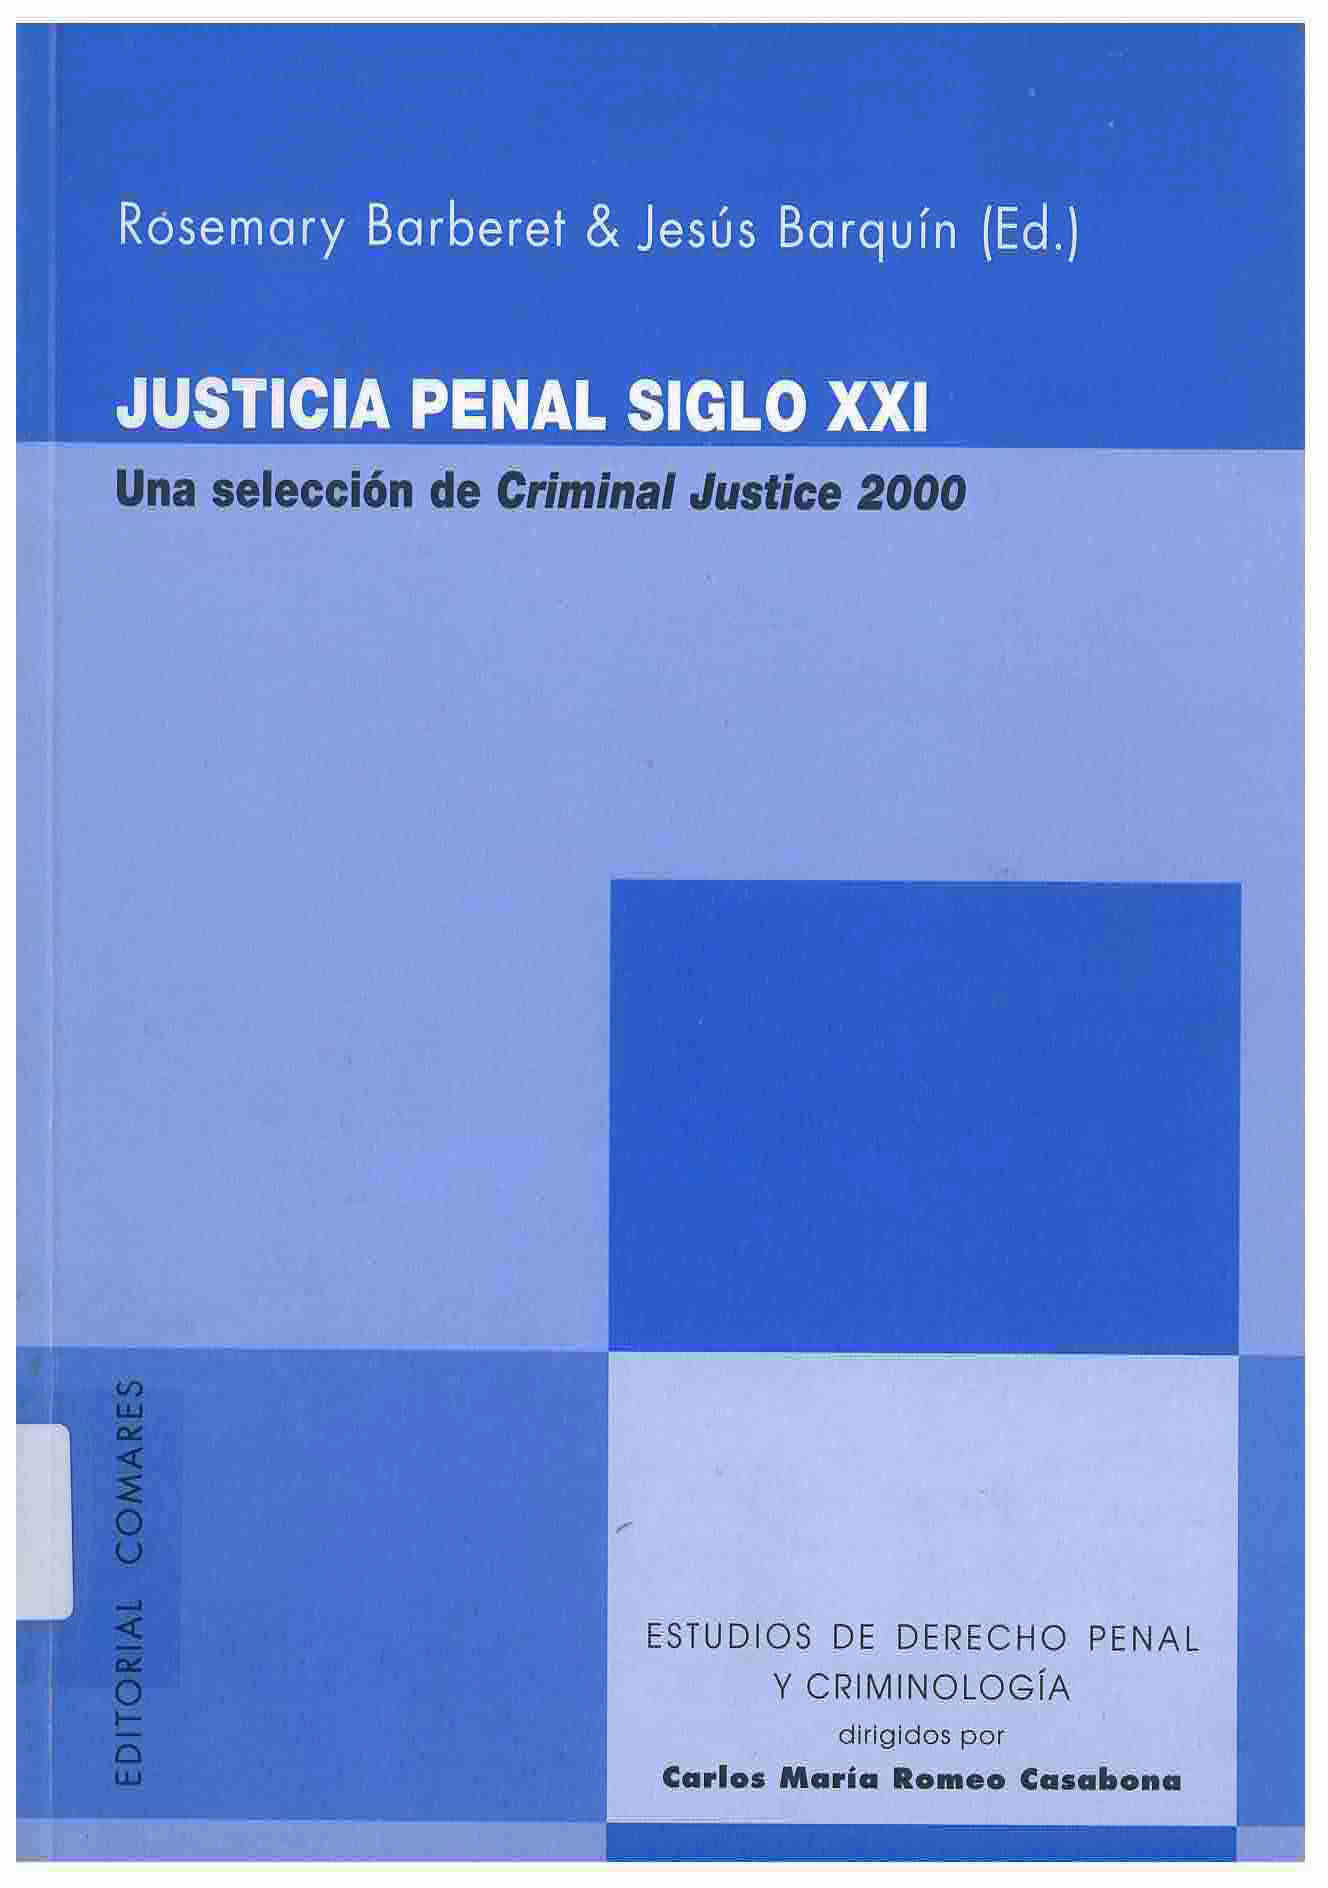 Justicia Penal Siglo XXI : una selección de Criminal Justice 2000